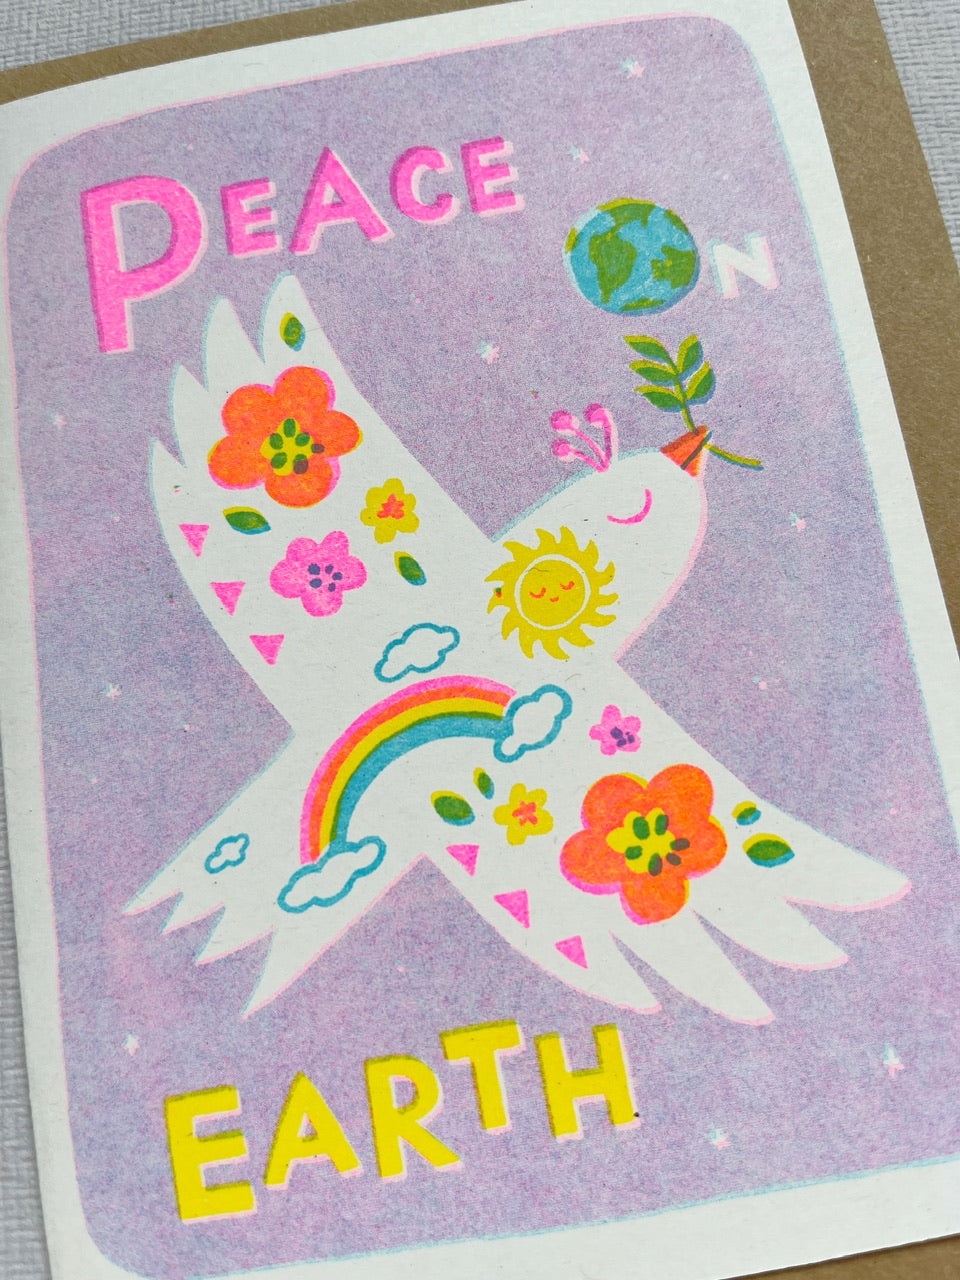 Peace on Earth - A6 risograph peace rainbow dove holidays Card